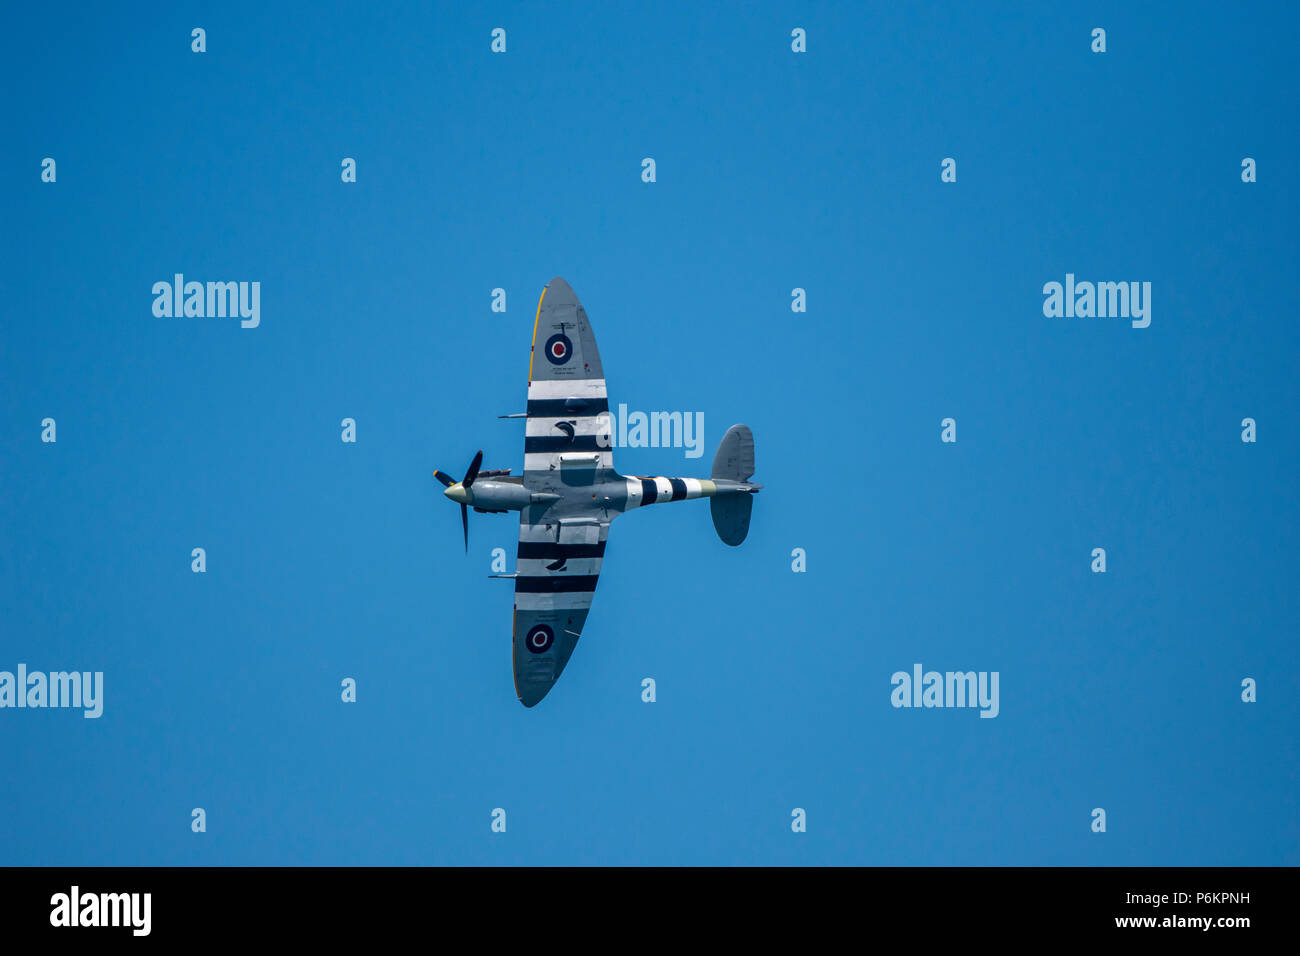 Die Royal Air Force die Schlacht um England Memorial Flight (BBMF). Supermarine Spitfire im blauen Himmel. Stockfoto